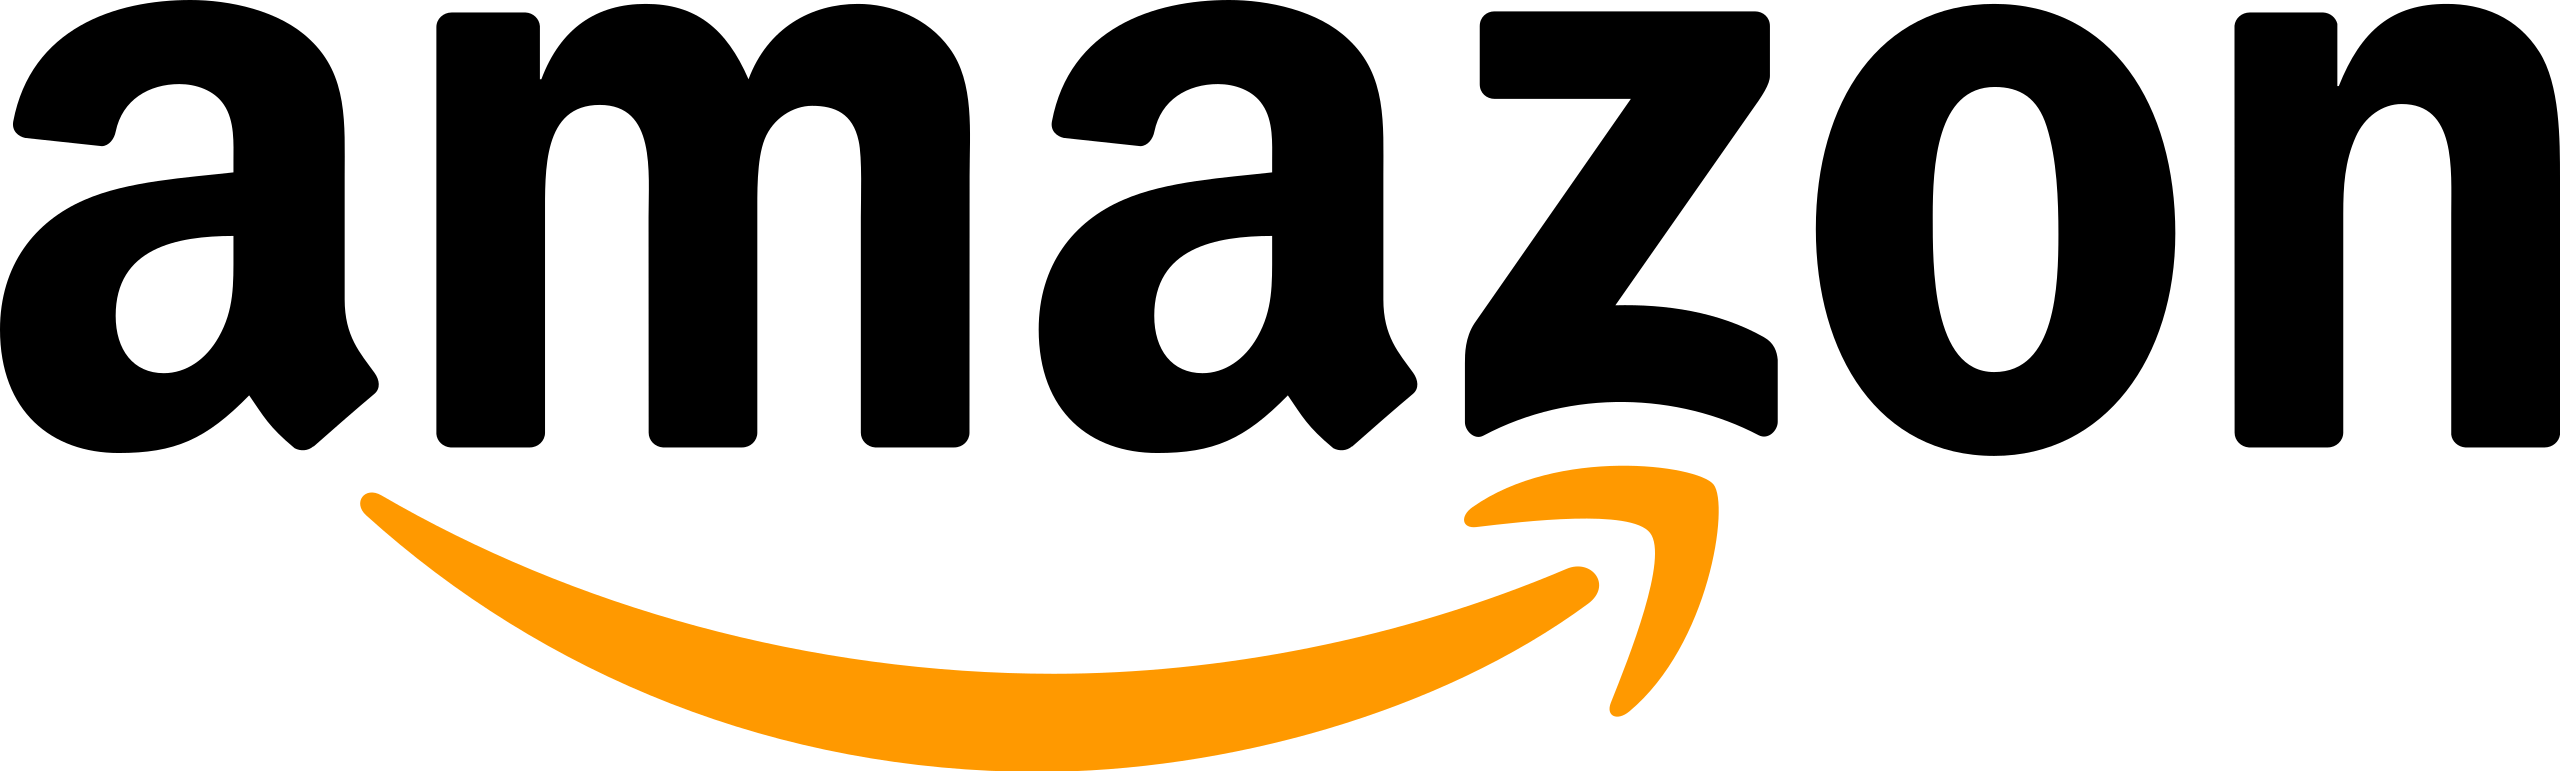 Amazon UK: International Shipping Guide - Worldwide Shopping Guide